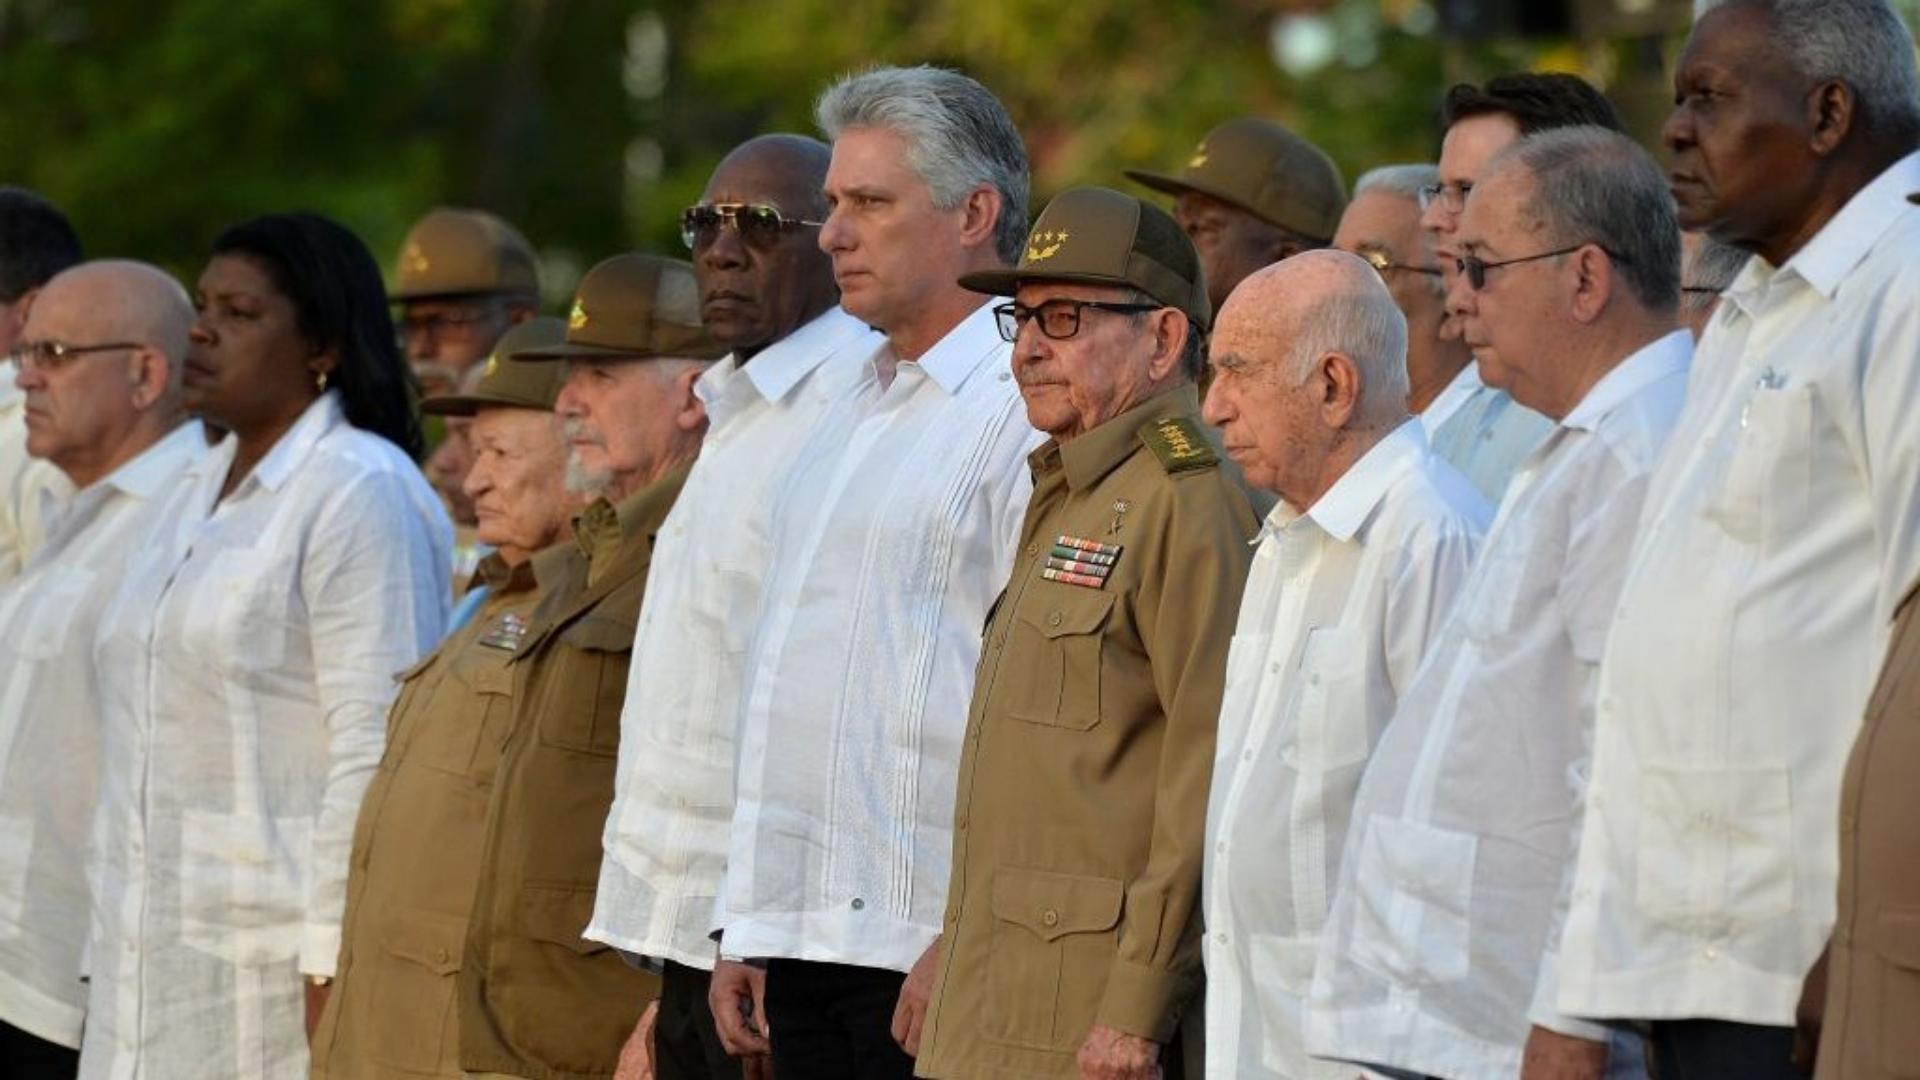 Dirigentes Cubanos (AFP)